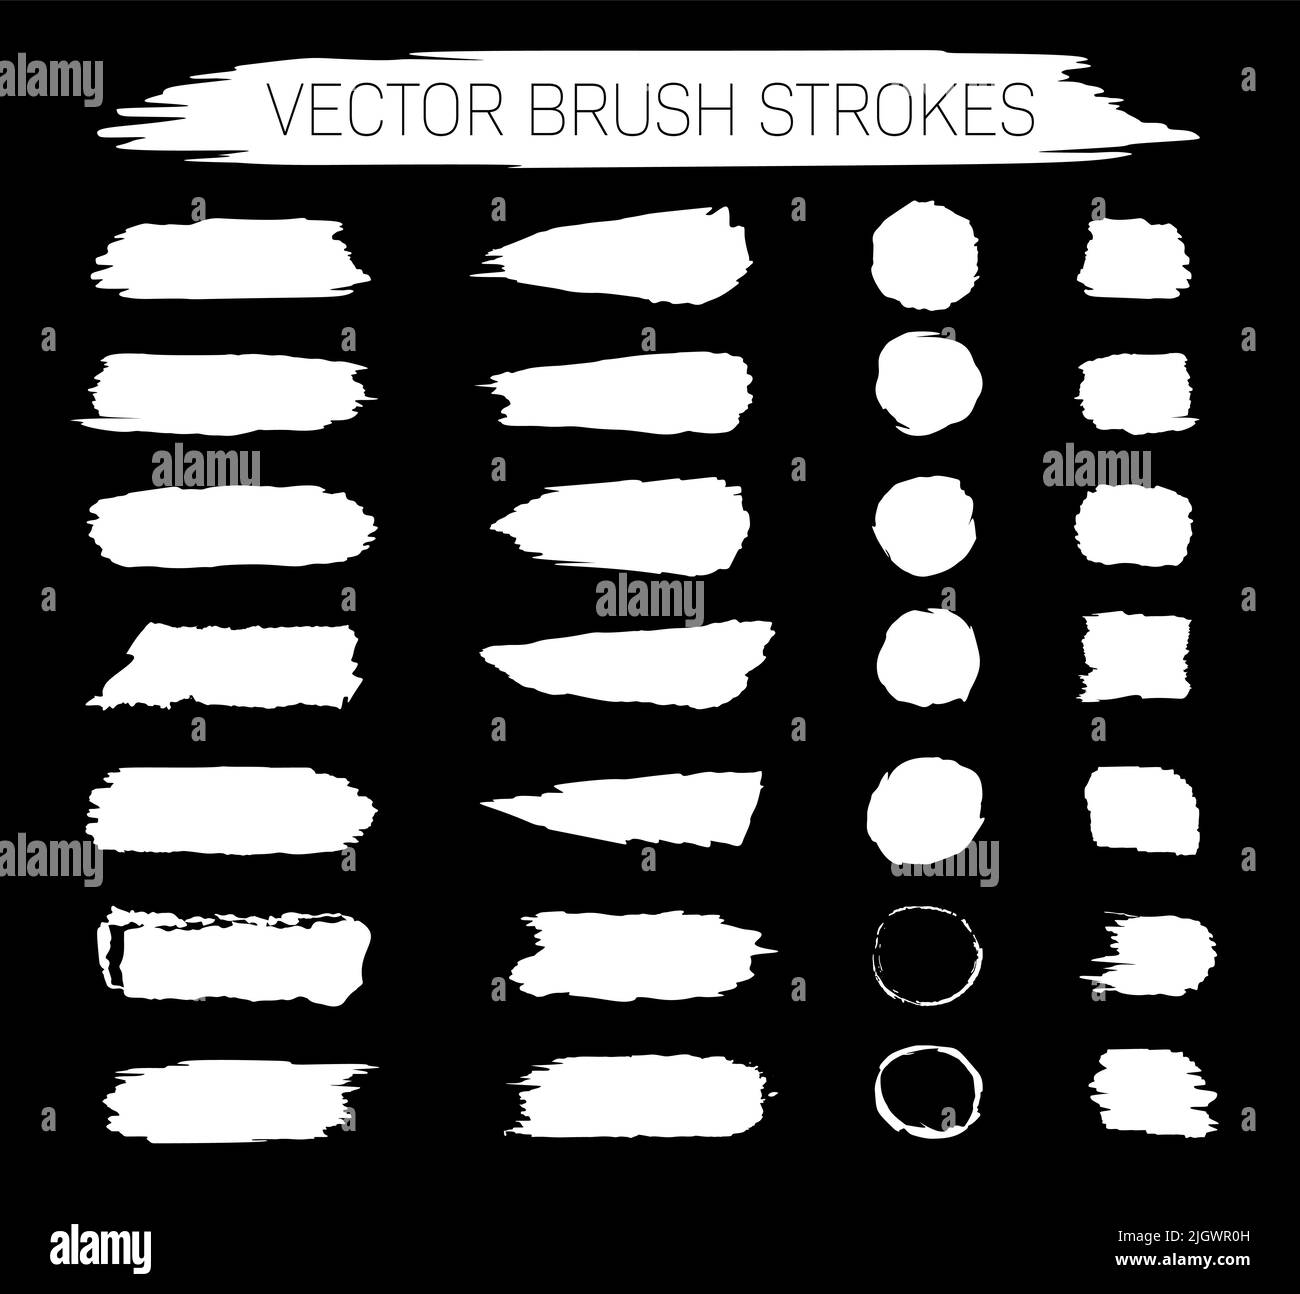 Sammlung von abstrakten weißen Vektor-Pinselstrichen auf schwarzem Hintergrund Stock Vektor